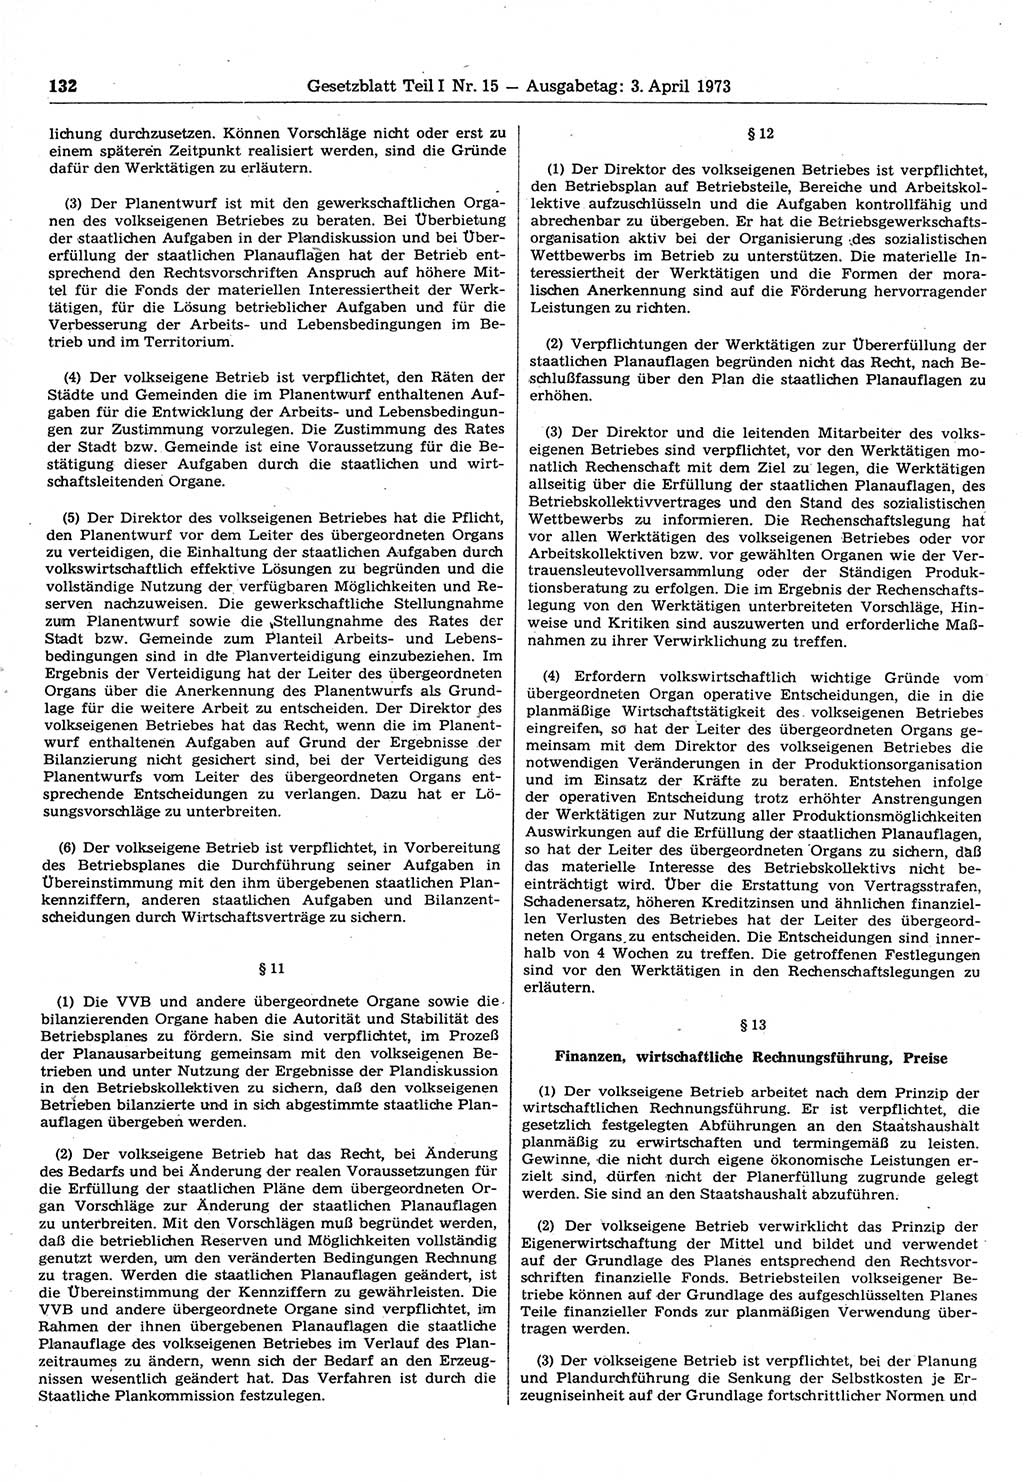 Gesetzblatt (GBl.) der Deutschen Demokratischen Republik (DDR) Teil Ⅰ 1973, Seite 132 (GBl. DDR Ⅰ 1973, S. 132)